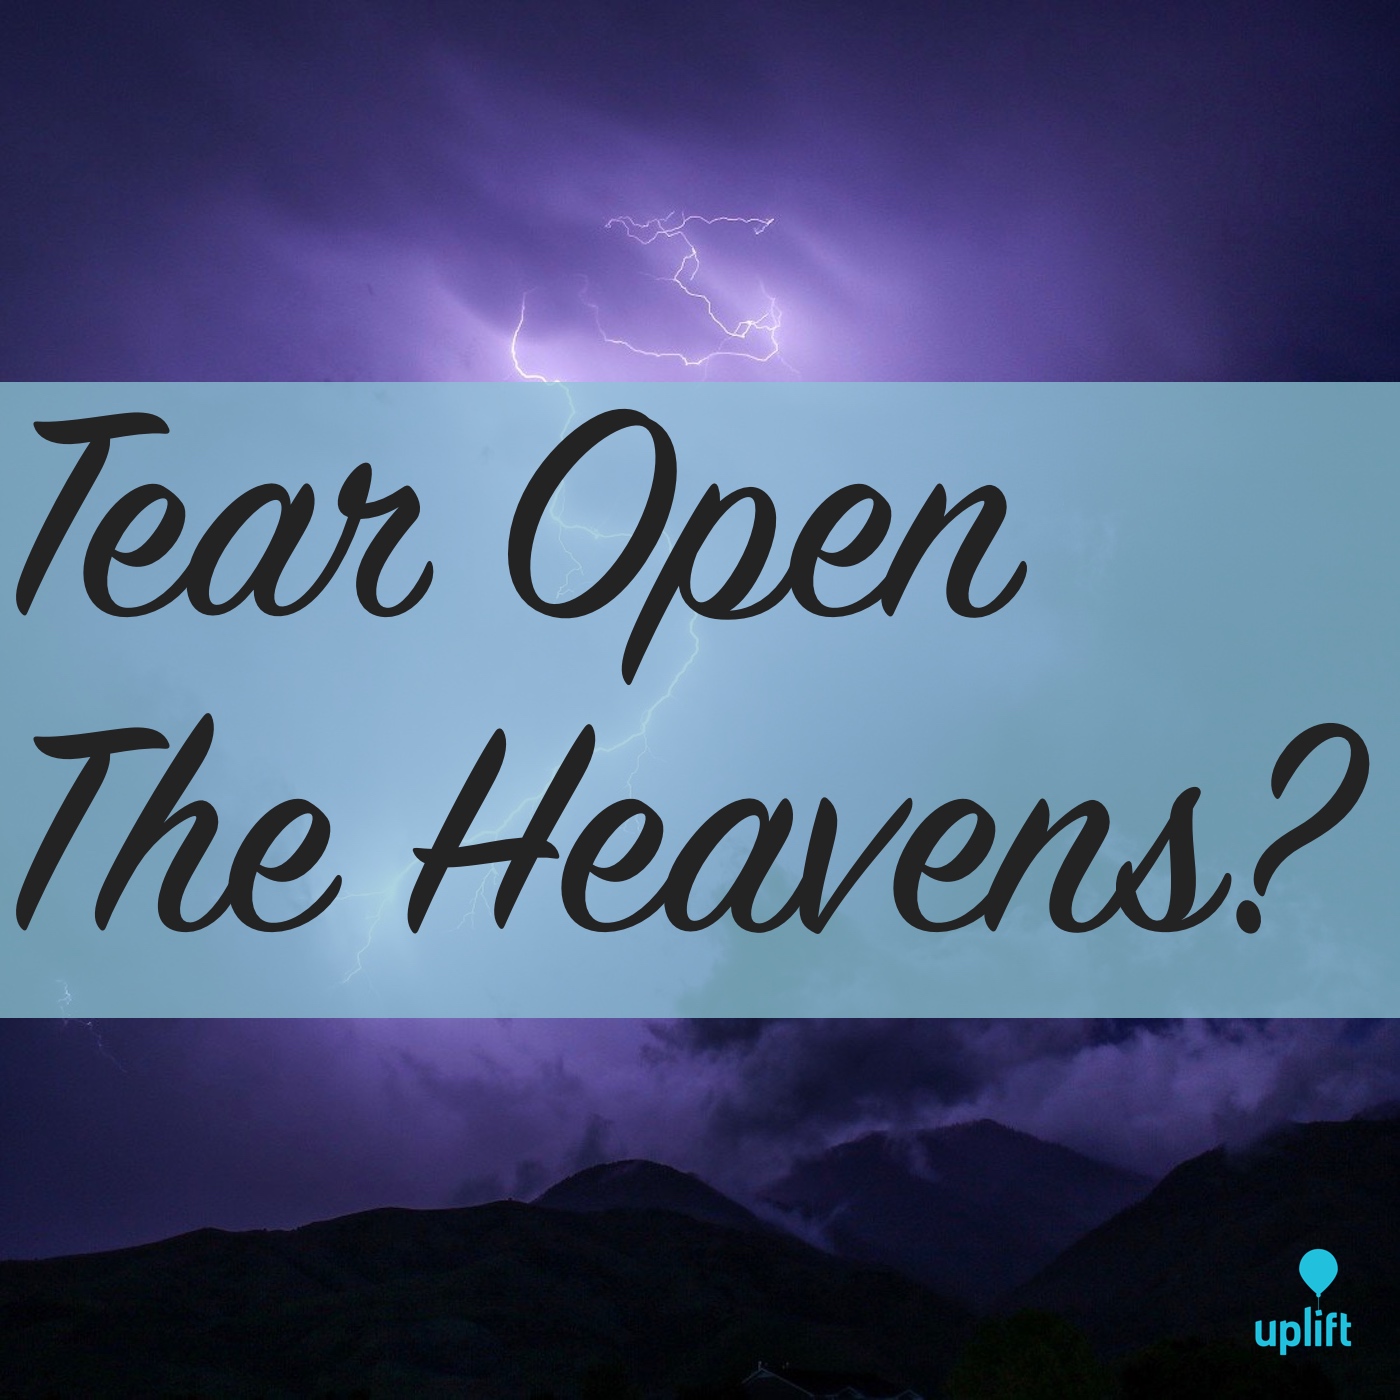 Episode 32: Tear Open The Heavens?